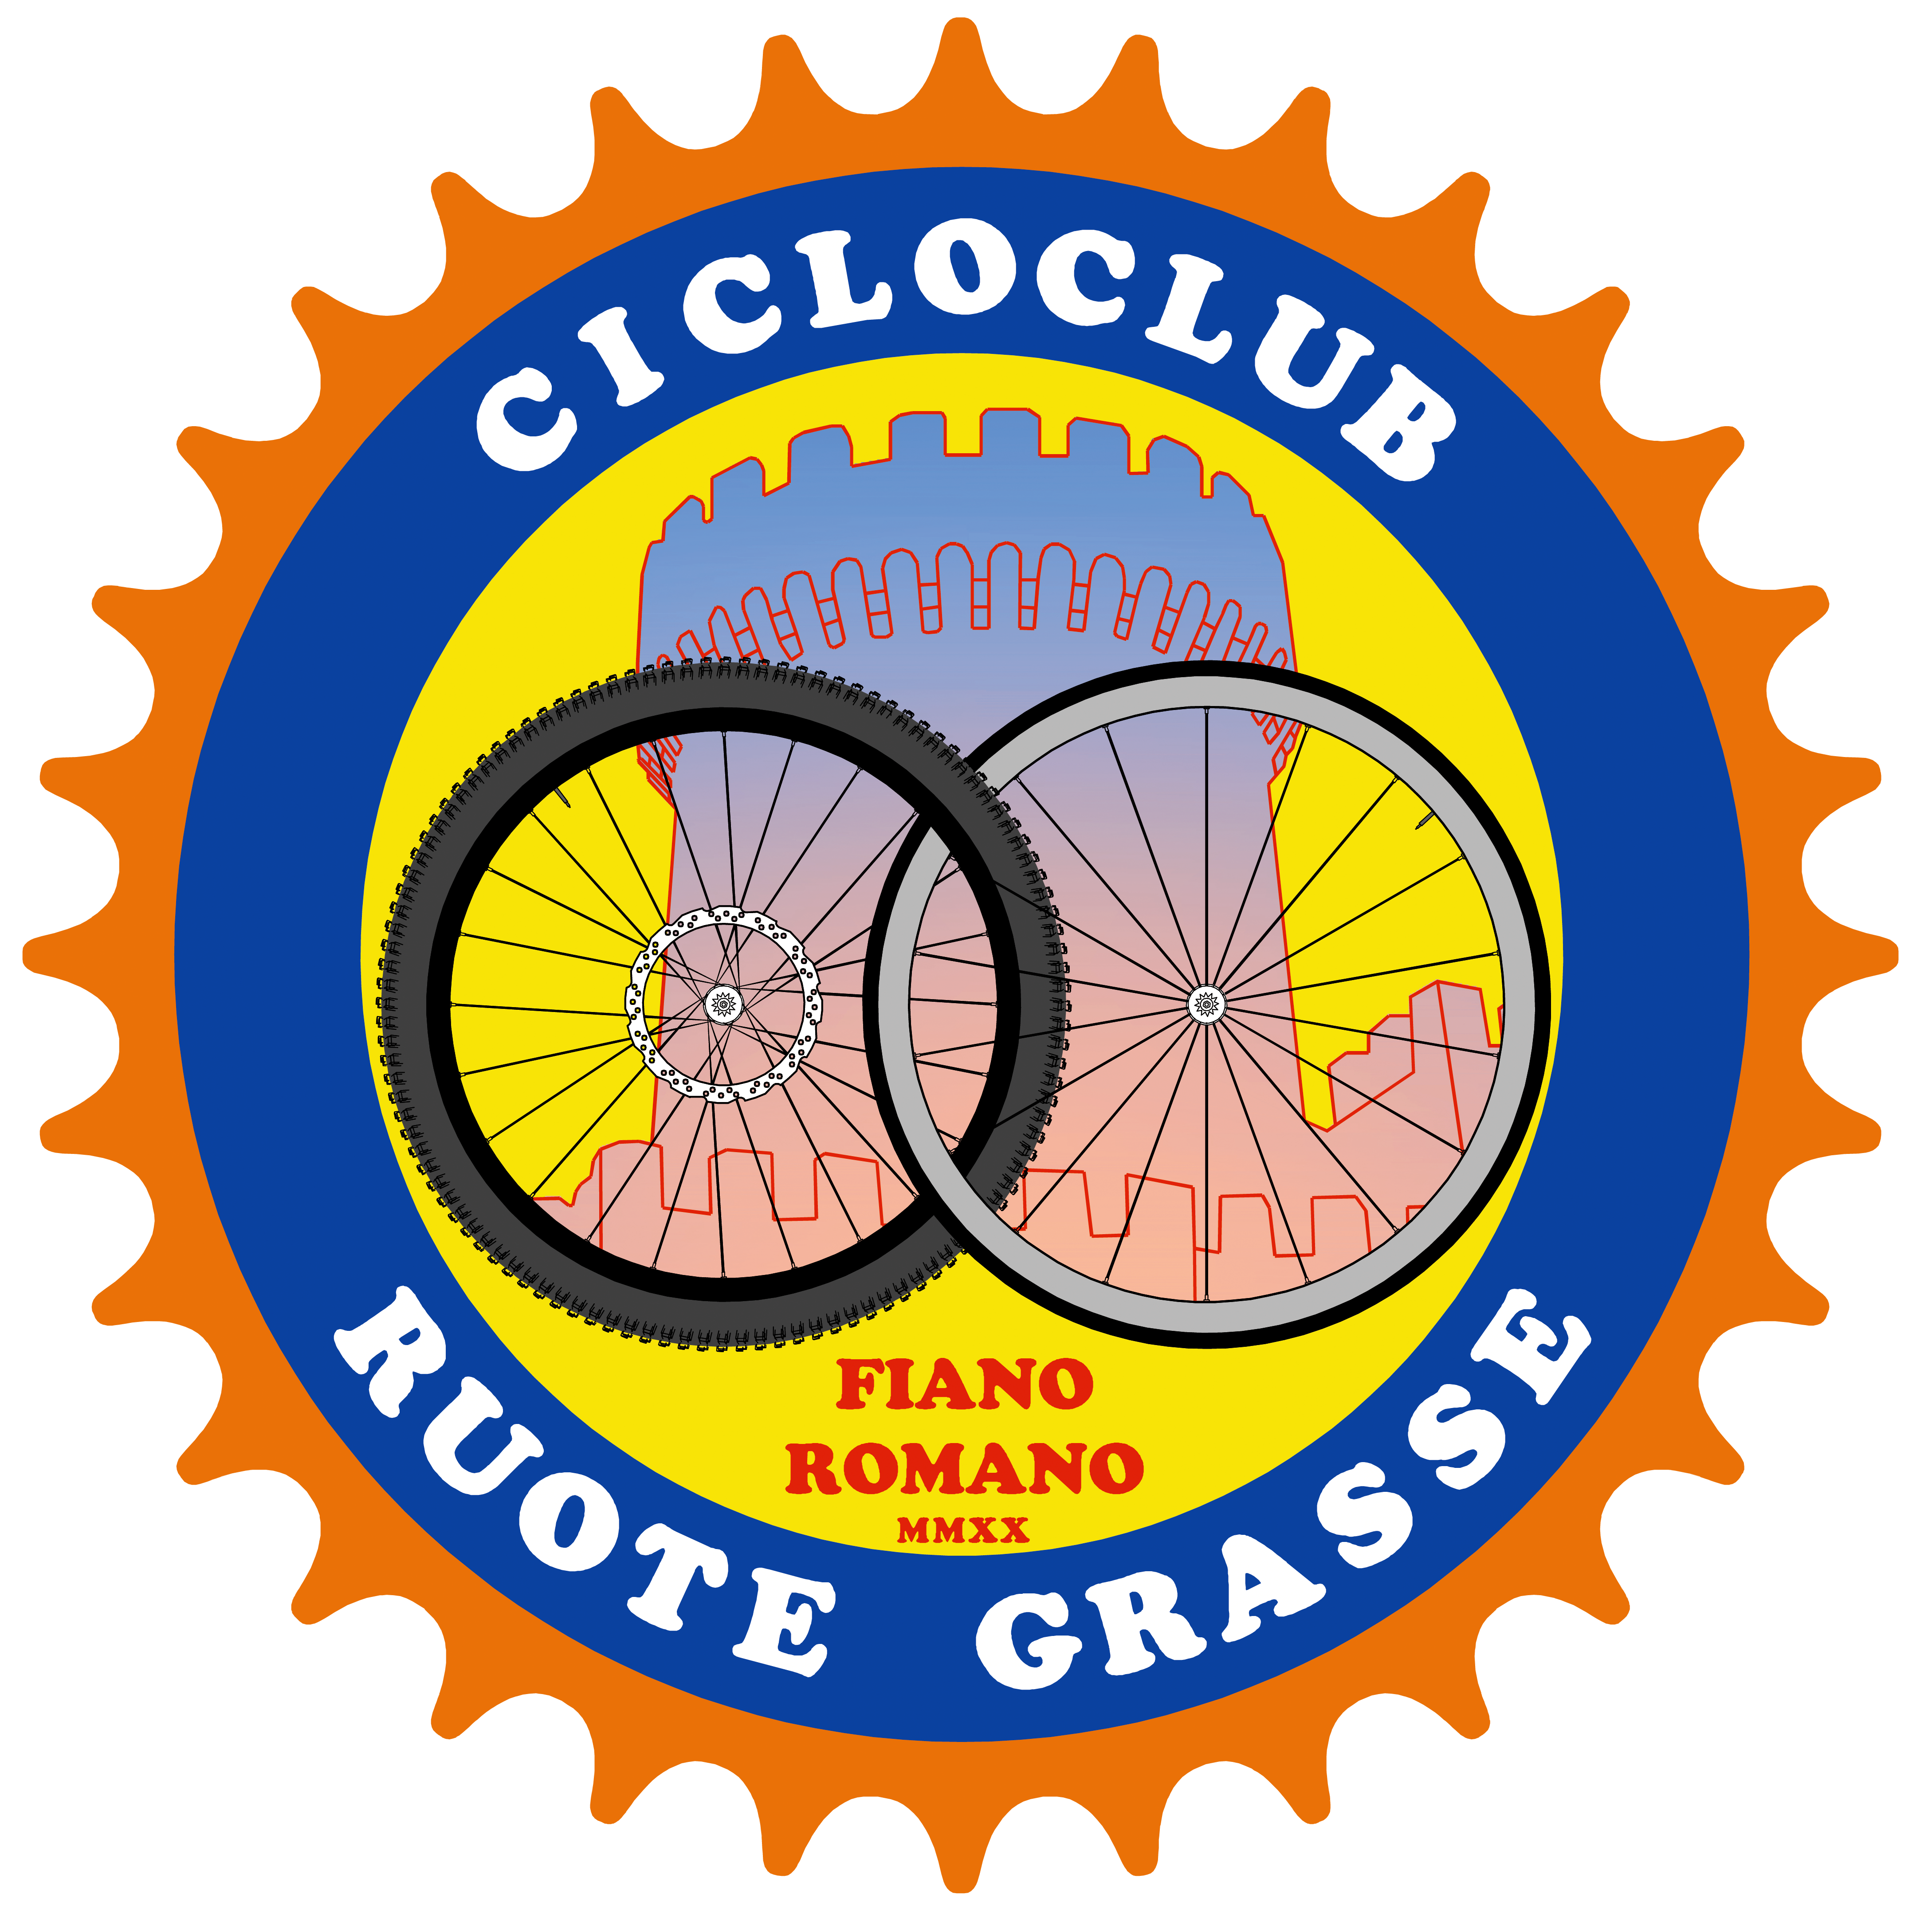 Cicloclub Ruote Grasse Fiano Romano